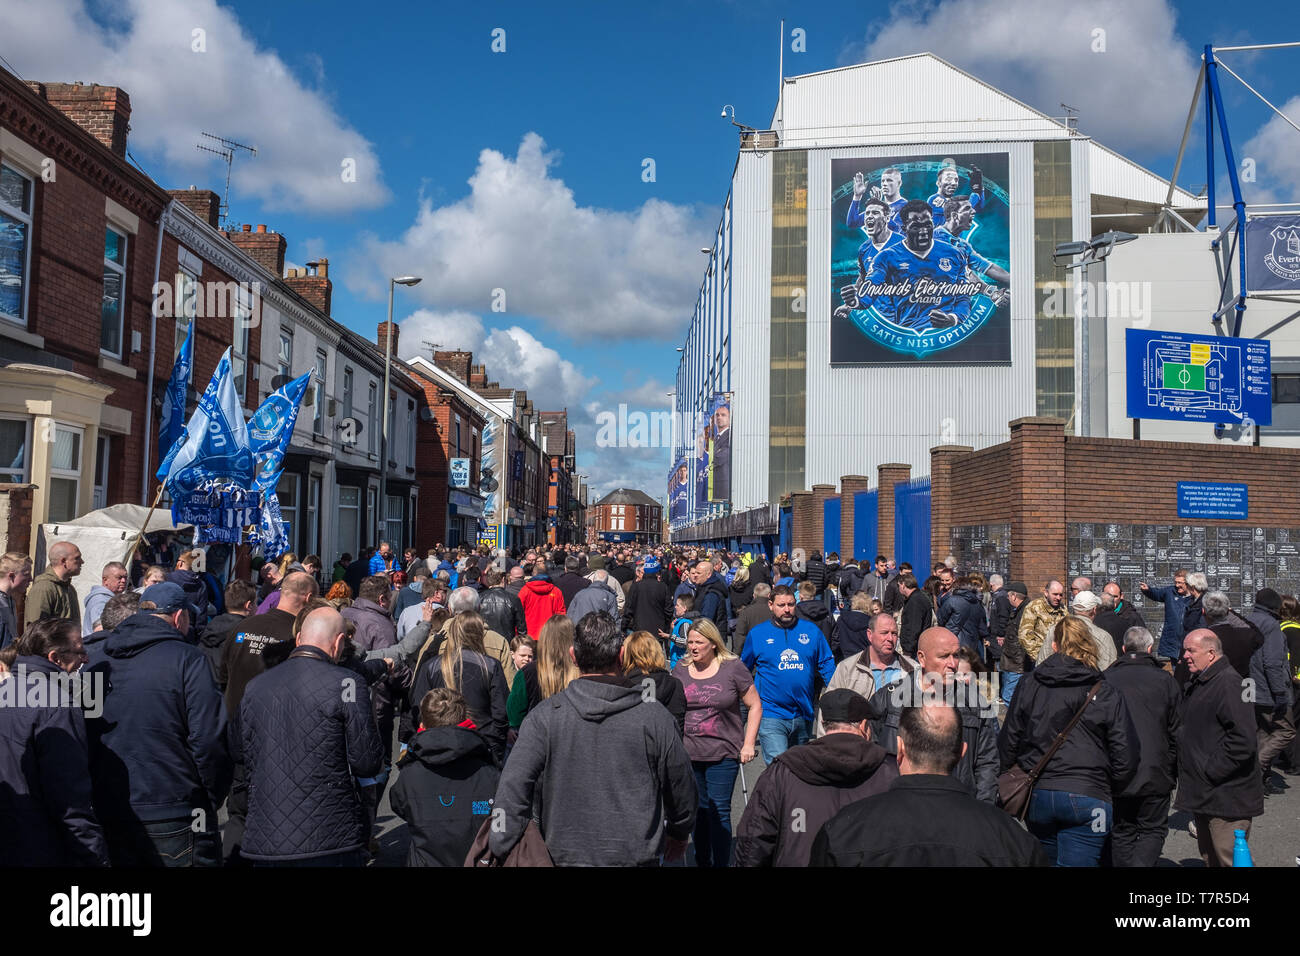 Everton, Liverpool, Regno Unito, aprile, 17, 2016: folle sostenitori si riuniranno presso Everton Calcio Club per un gioco di premiership rispetto a Southampton, bandiere e sciarpe in Everton colori può essere visto, contro un luminoso cielo blu Foto Stock